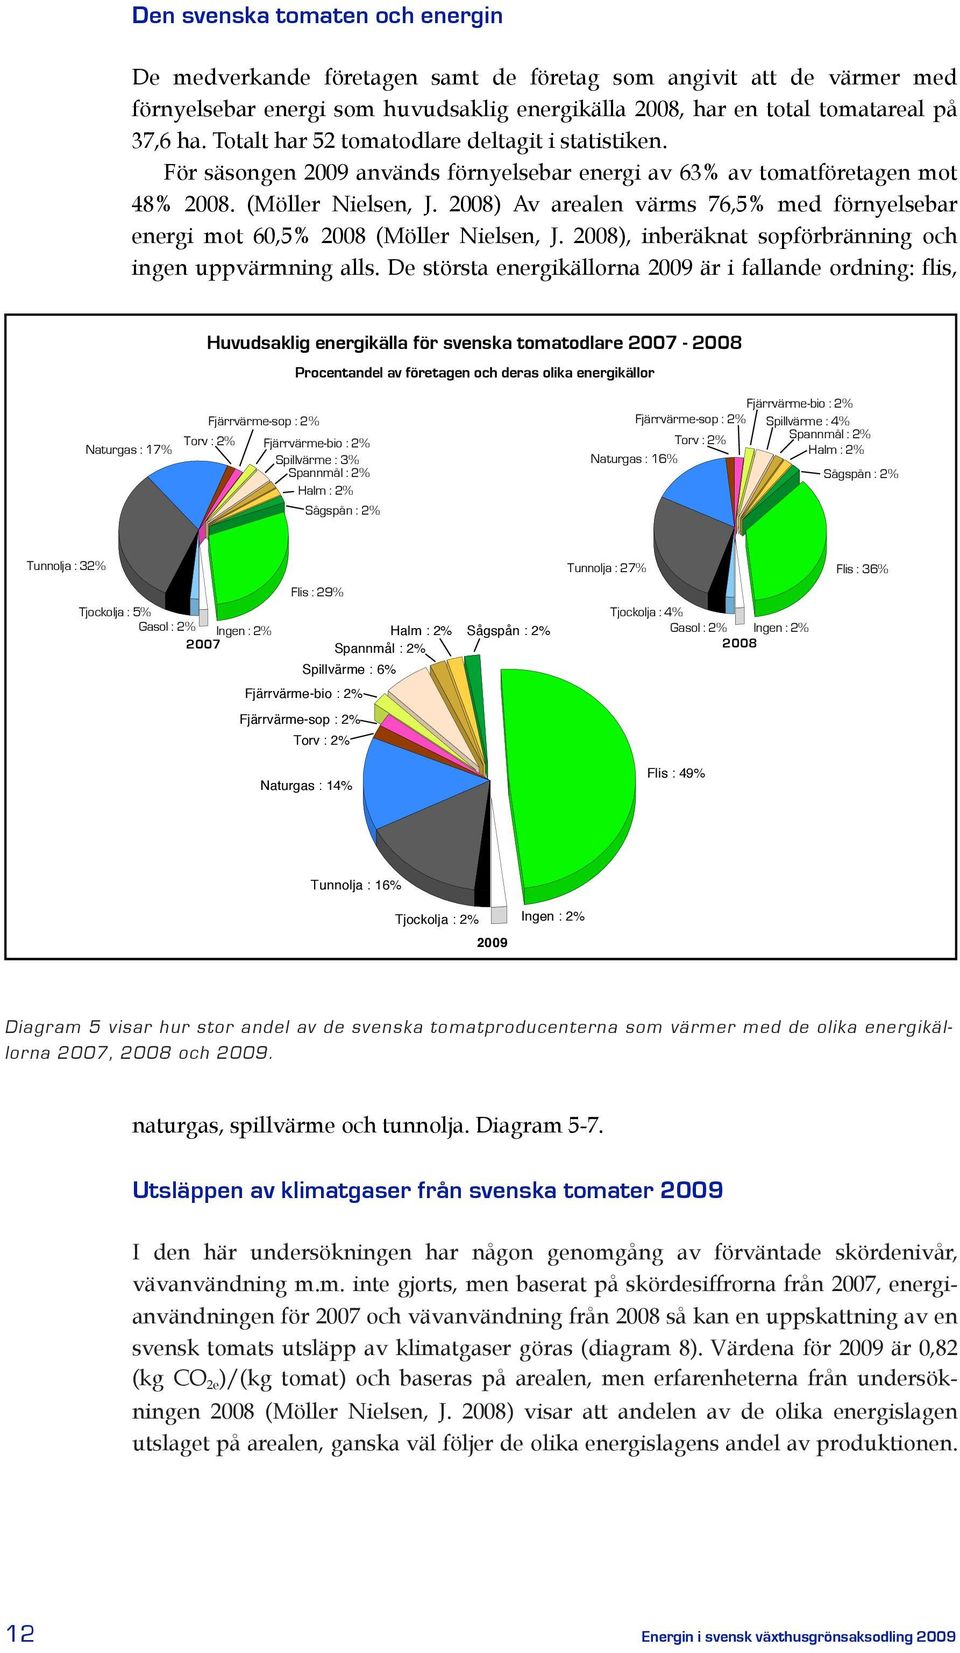 2008) Av arealen värms 76,5% med förnyelsebar energi mot 60,5% 2008 (Möller Nielsen, J. 2008), inberäknat sopförbränning och ingen uppvärmning alls.